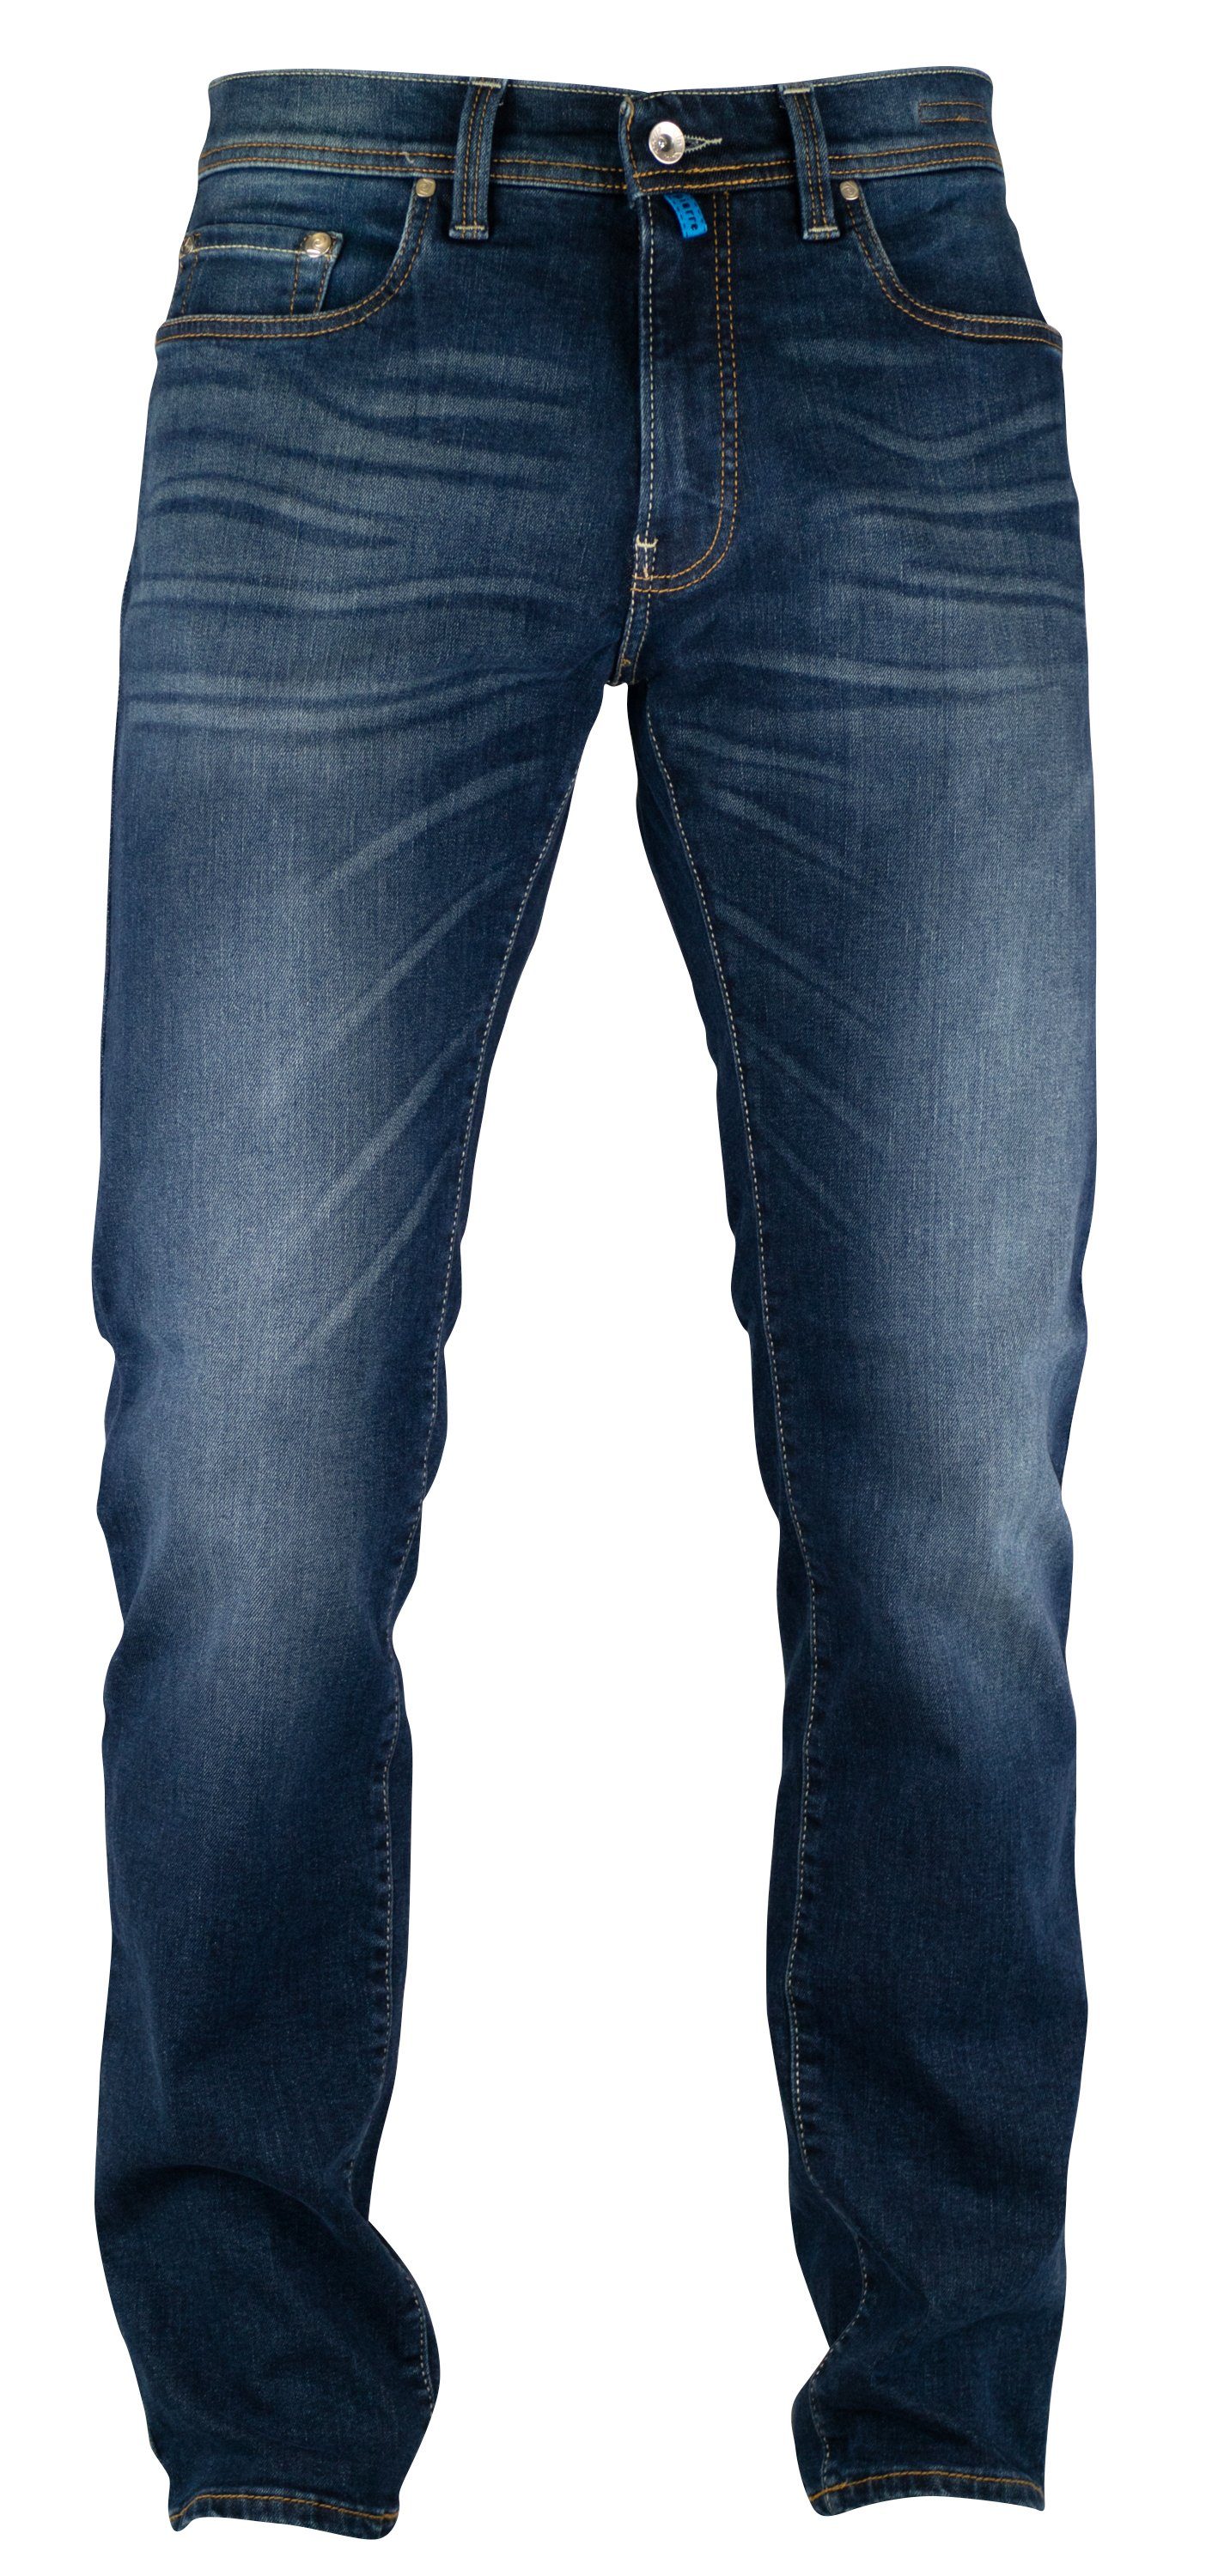 Pierre Cardin 5-Pocket-Jeans PIERRE CARDIN FUTUREFLEX LYON mid sun vintage blue used washed 3451 | Jeans